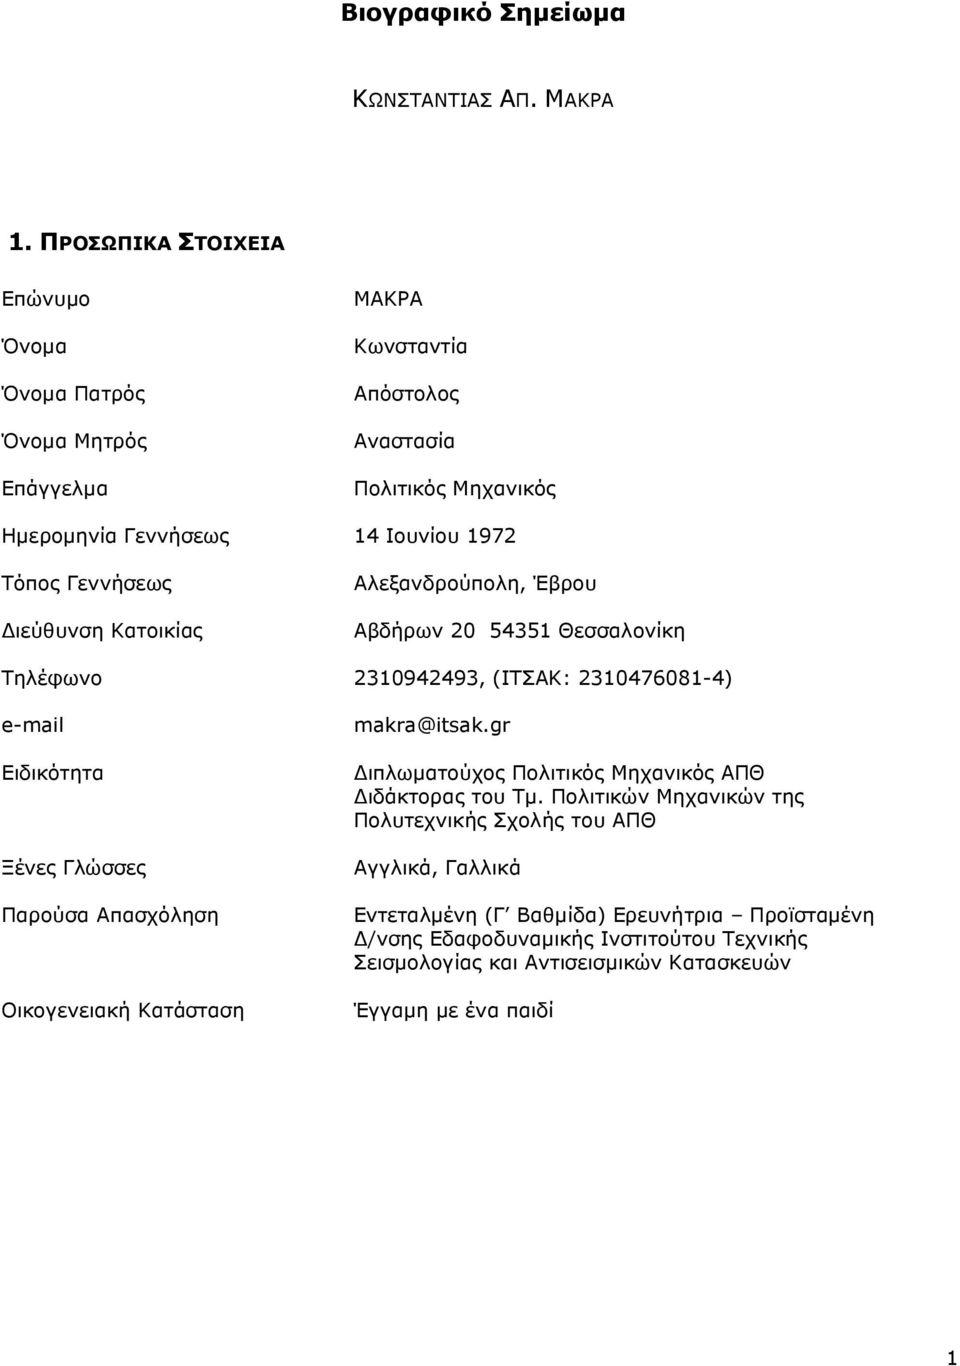 Γεννήσεως ιεύθυνση Κατοικίας Αλεξανδρούπολη, Έβρου Αβδήρων 20 54351 Θεσσαλονίκη Τηλέφωνο 2310942493, (ΙΤΣΑΚ: 2310476081-4) e-mail Ειδικότητα Ξένες Γλώσσες Παρούσα Απασχόληση